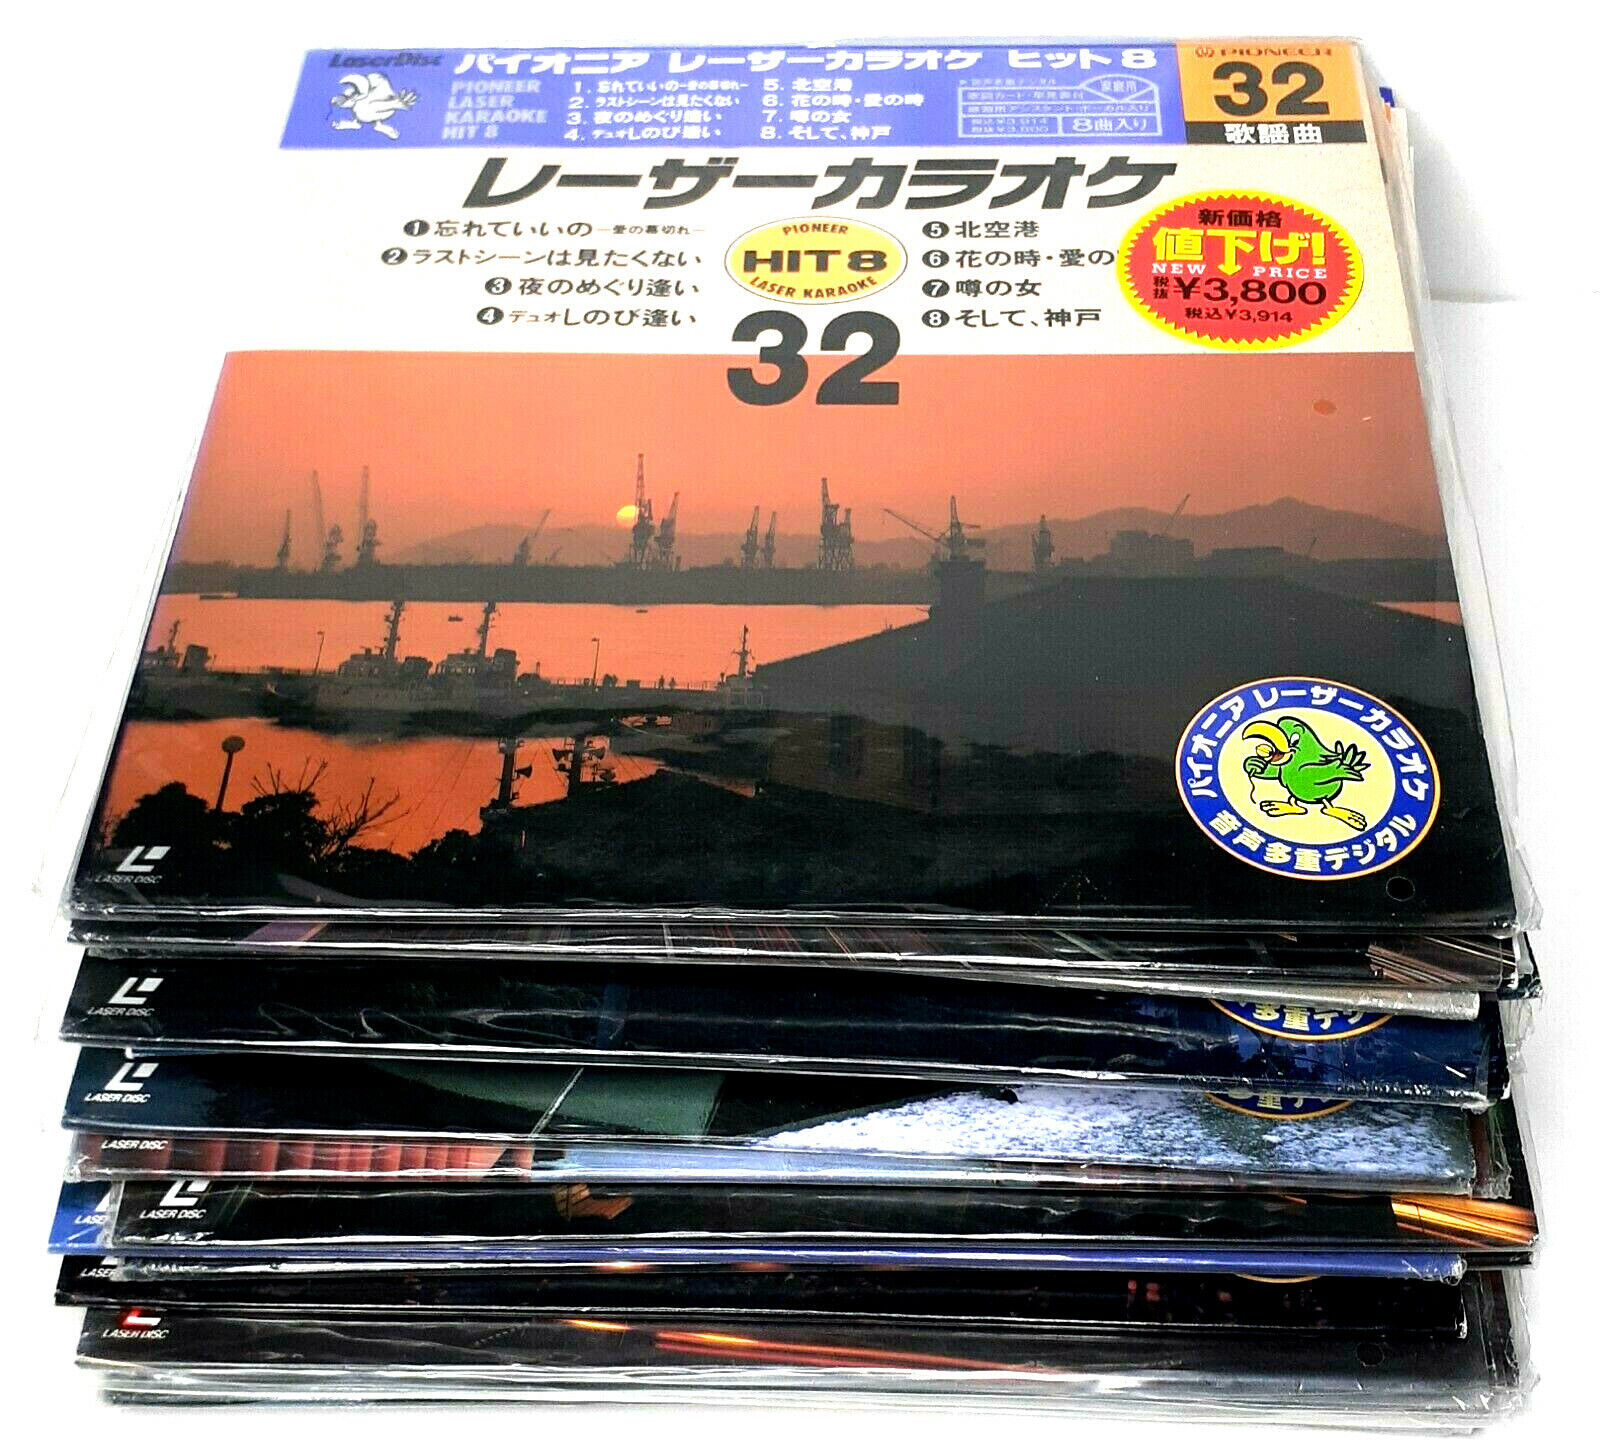 Vintage Karaoke Japanese Pioneer Laserdisc 90s 80s Hits Video Disc LOT OF 18 Pioneer Pioneer - фотография #8